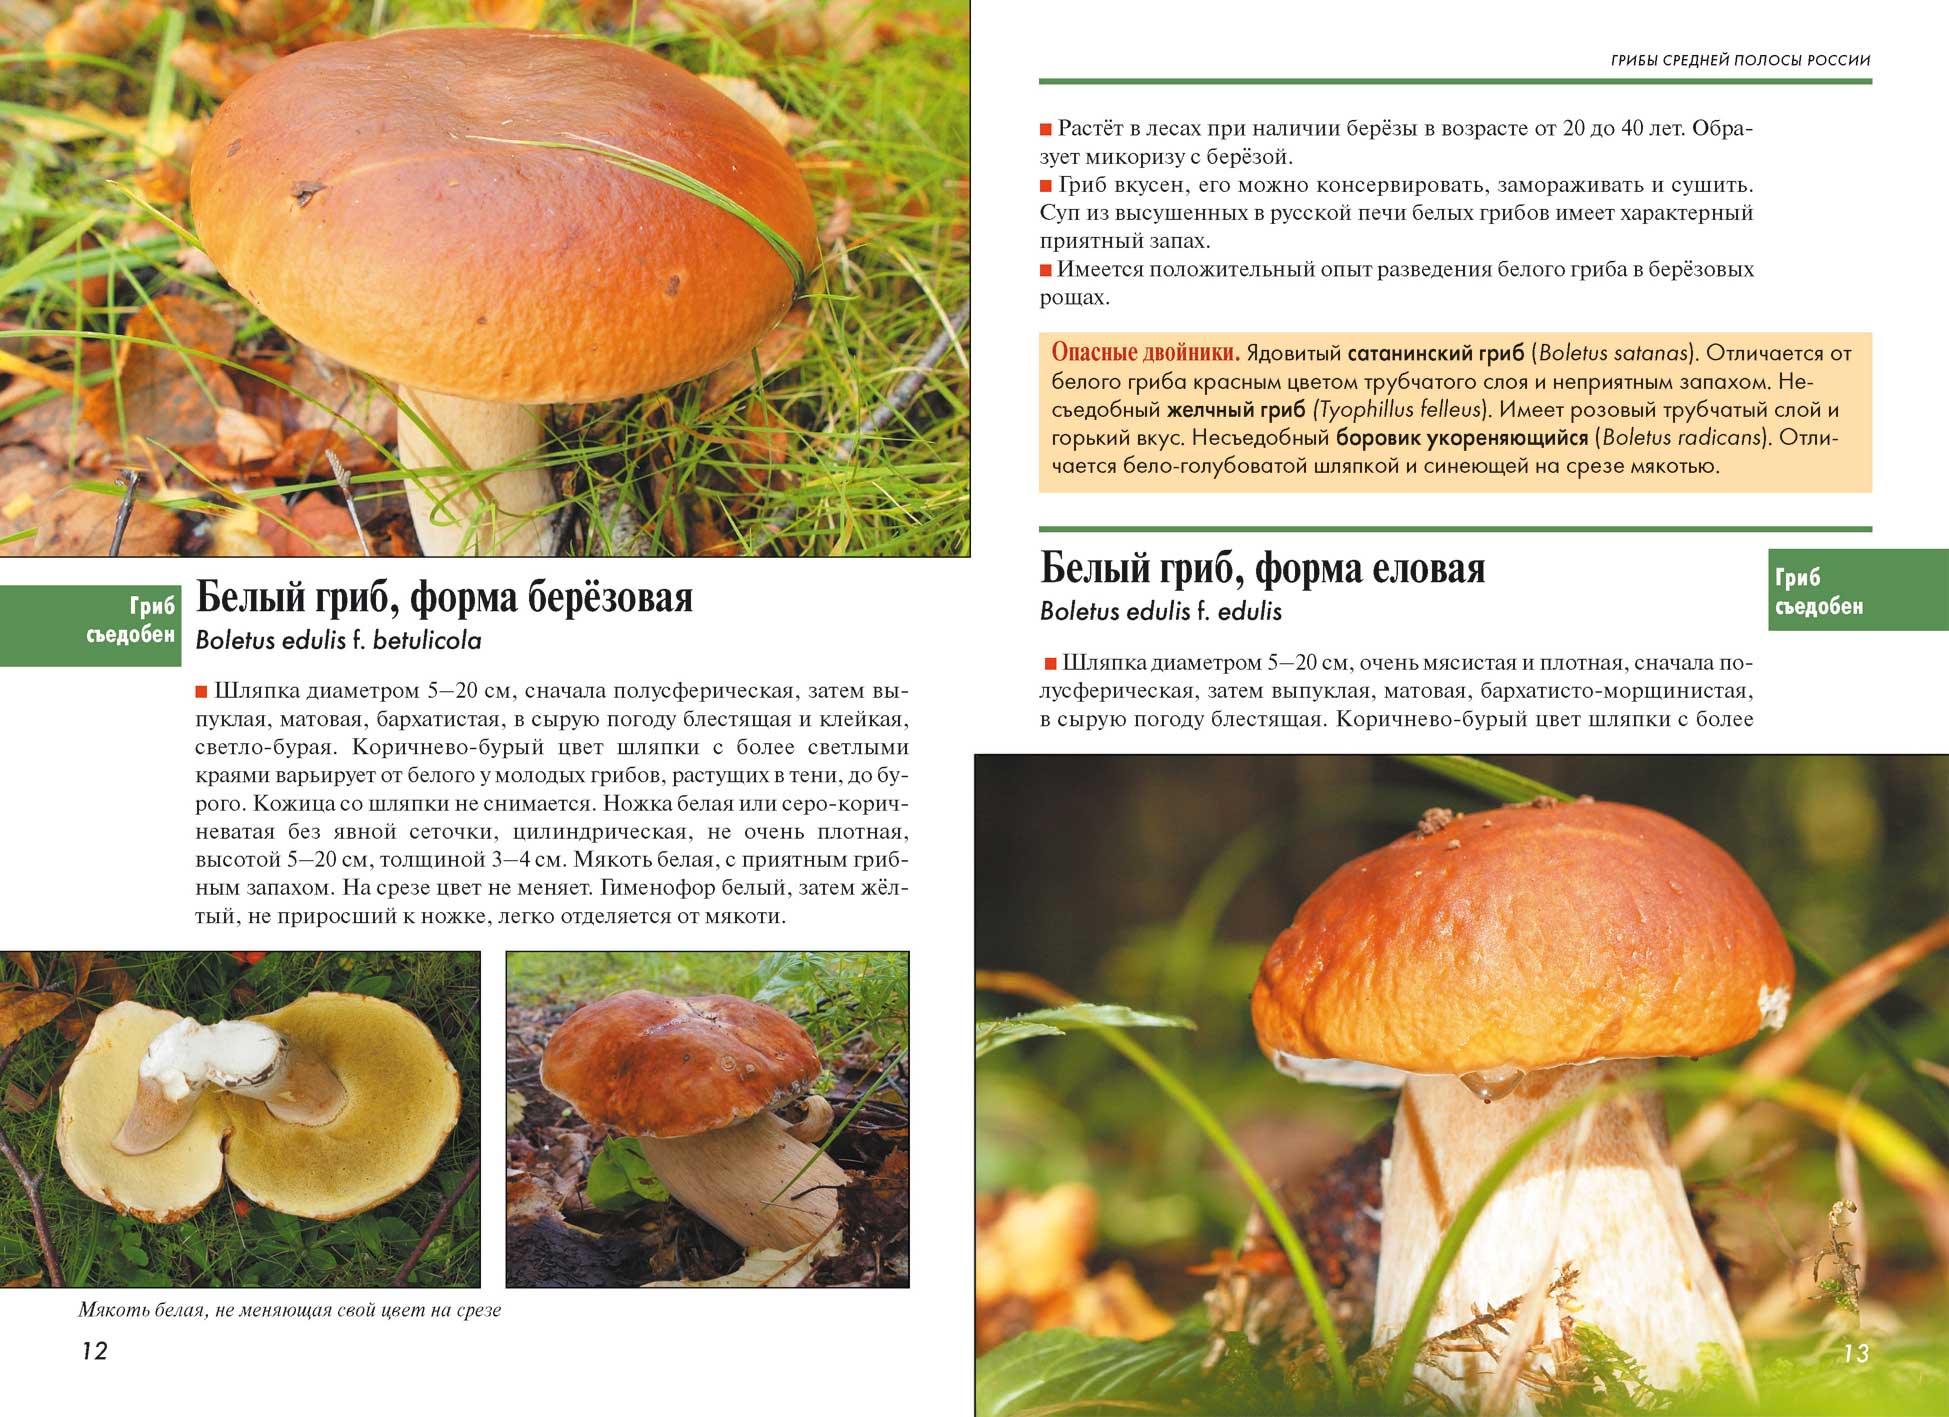 Навозник обыкновенный гриб с невкусным именем - грибы собираем